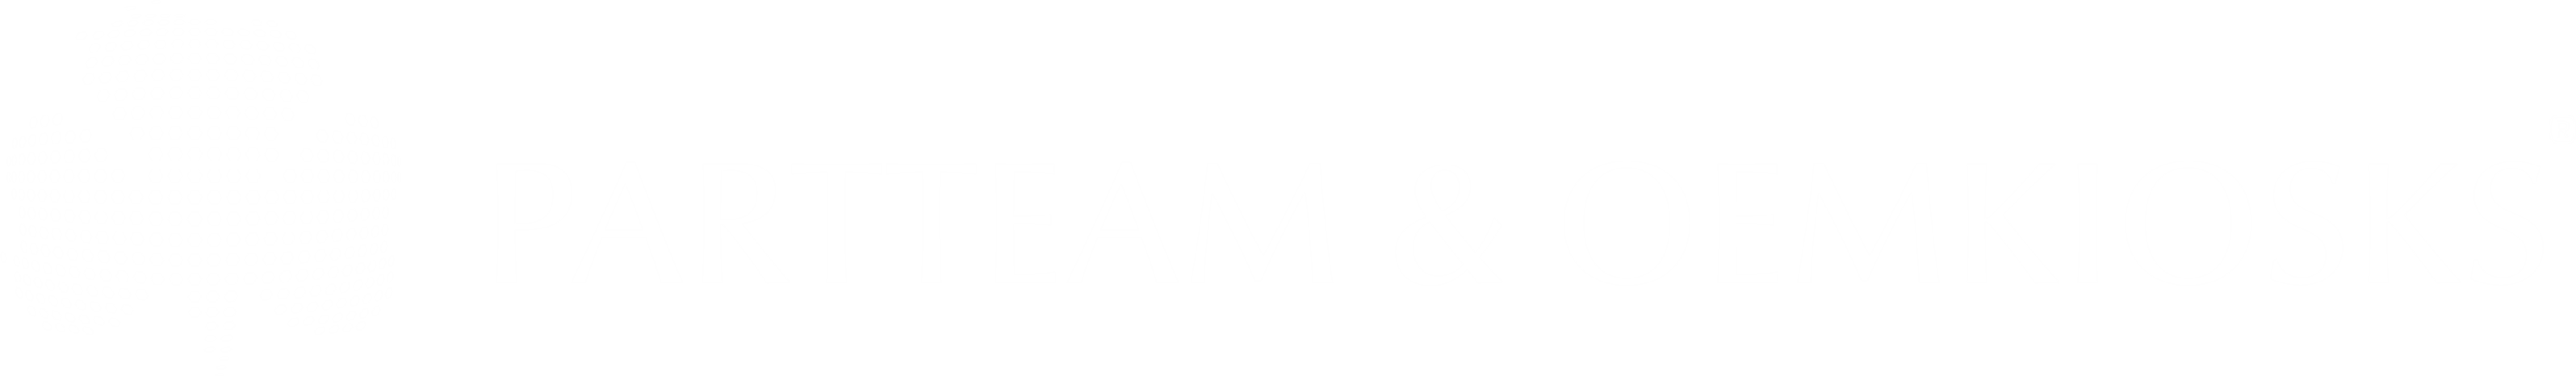 PARTTEAM & OEMKIOSKS Group Logo